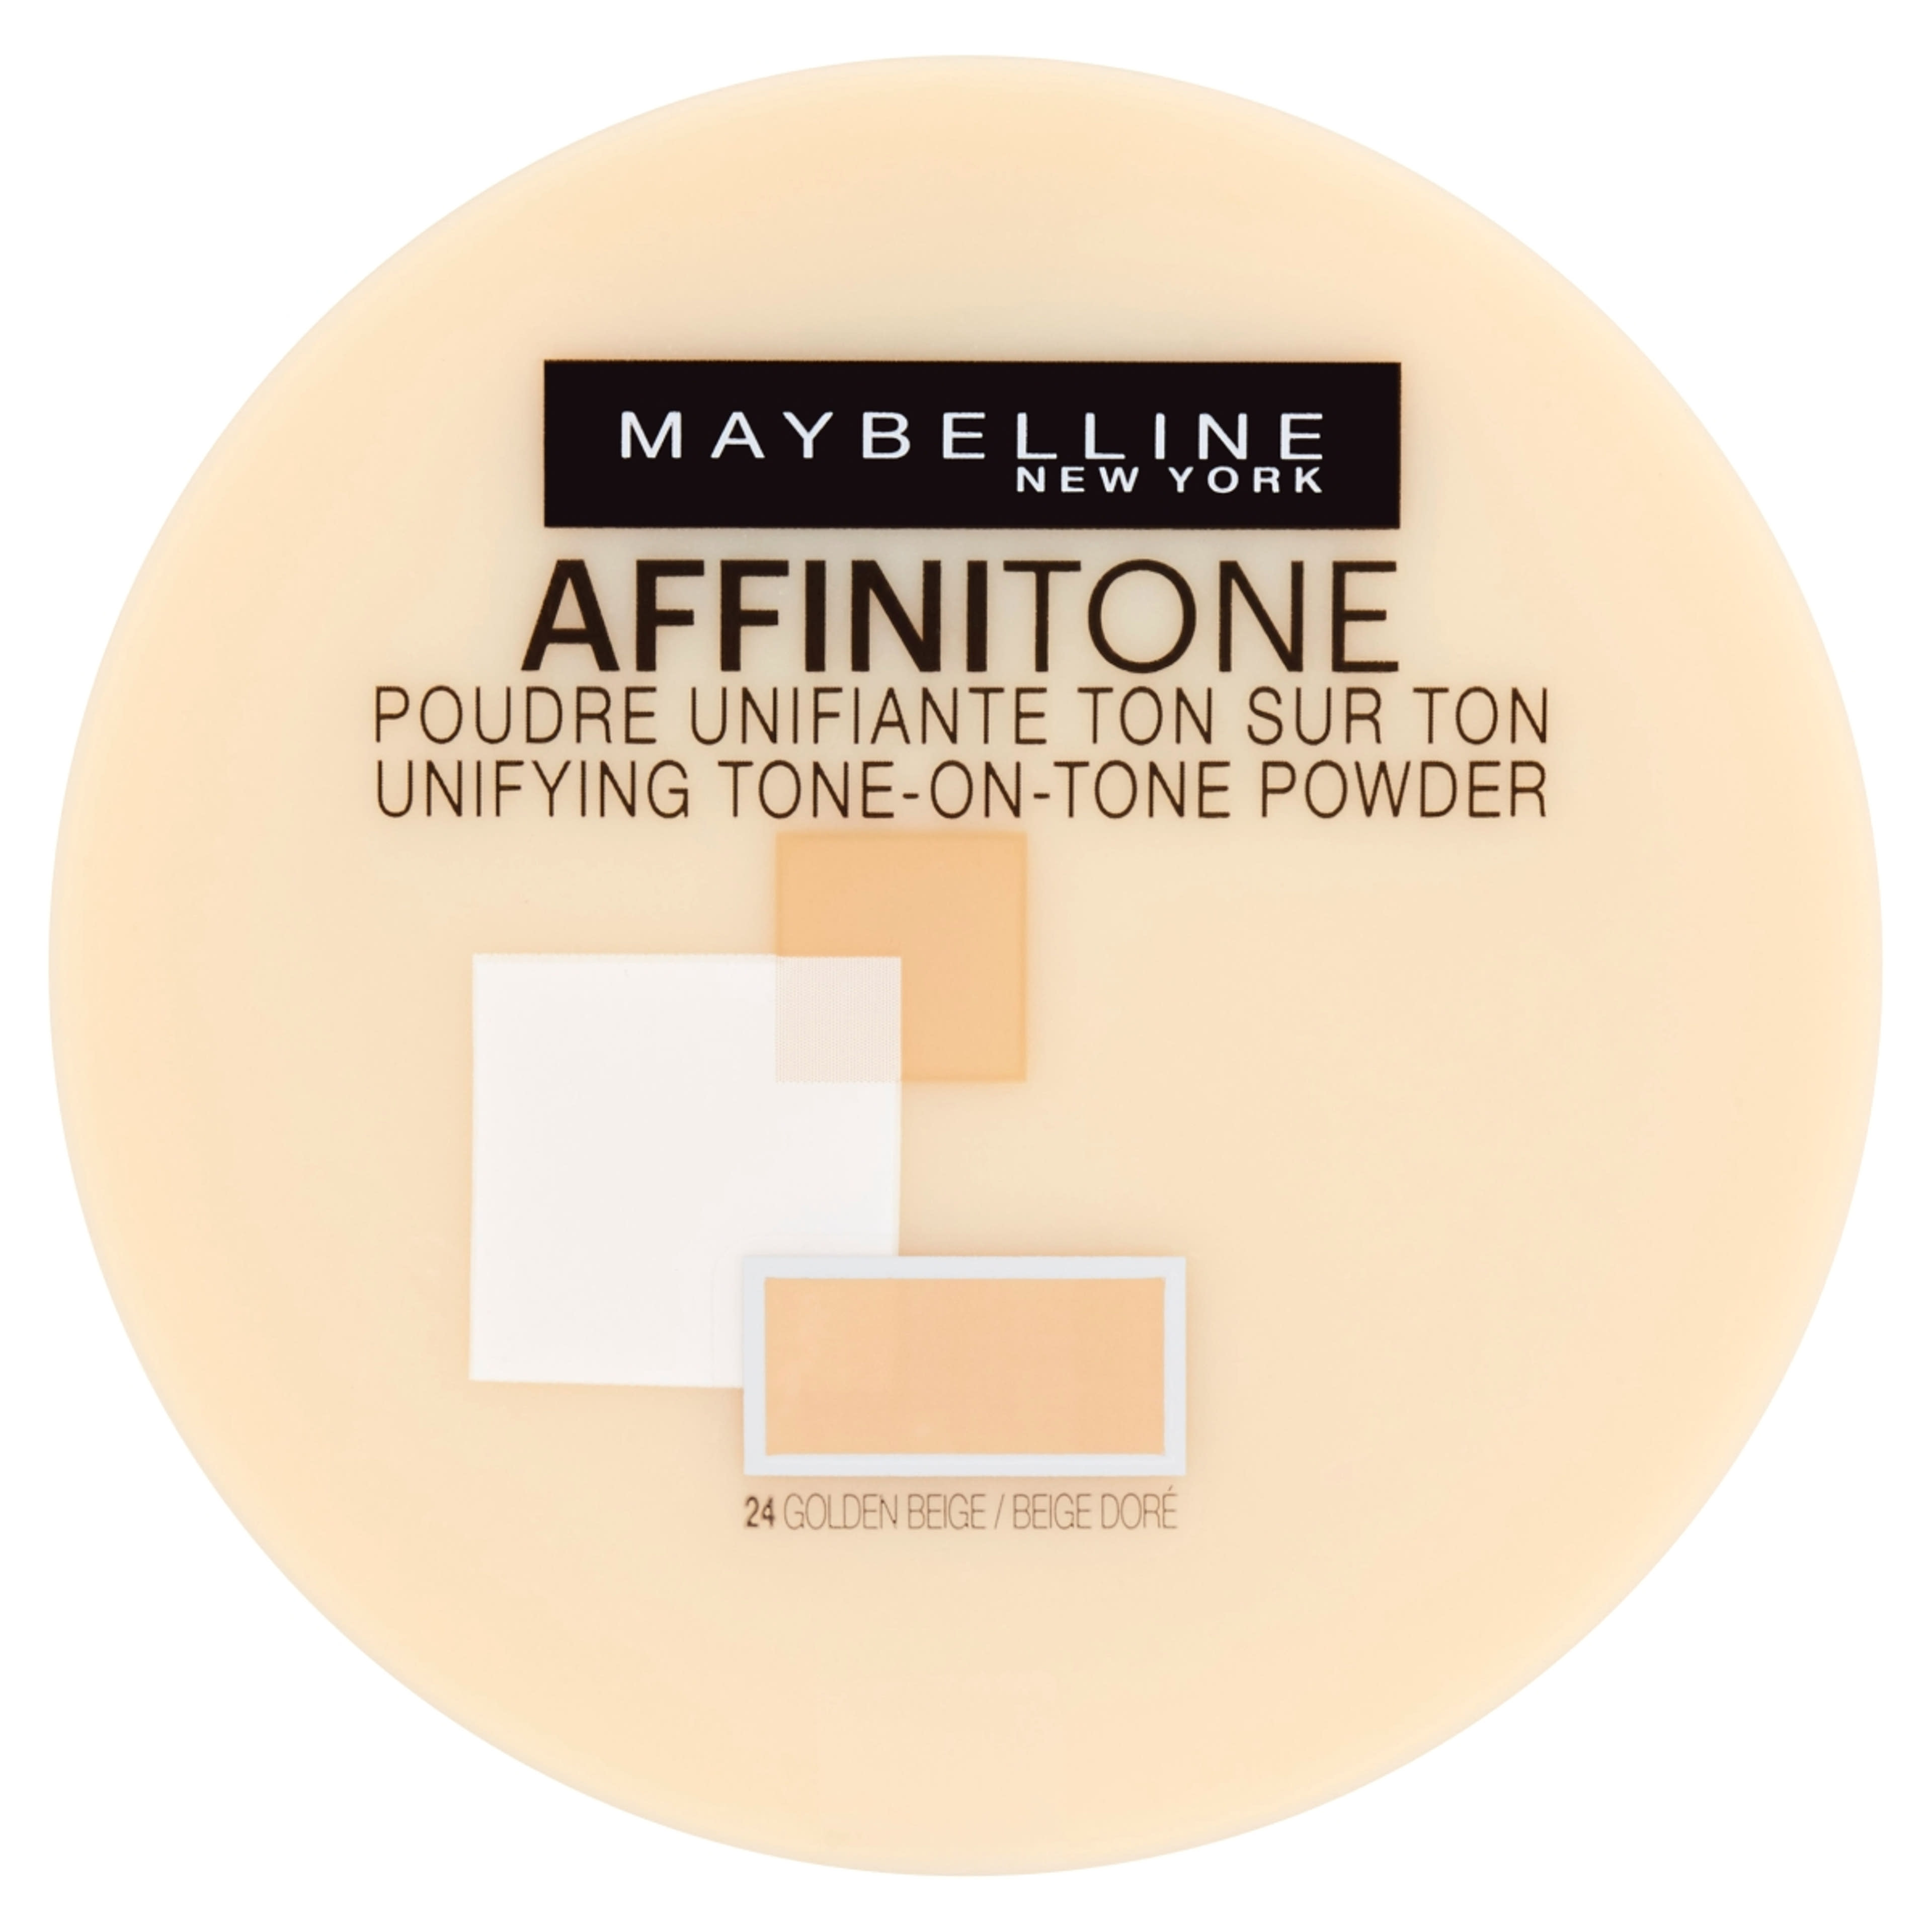 Maybelline Affinitone púder, 24 Golden Beige - 1 db-1